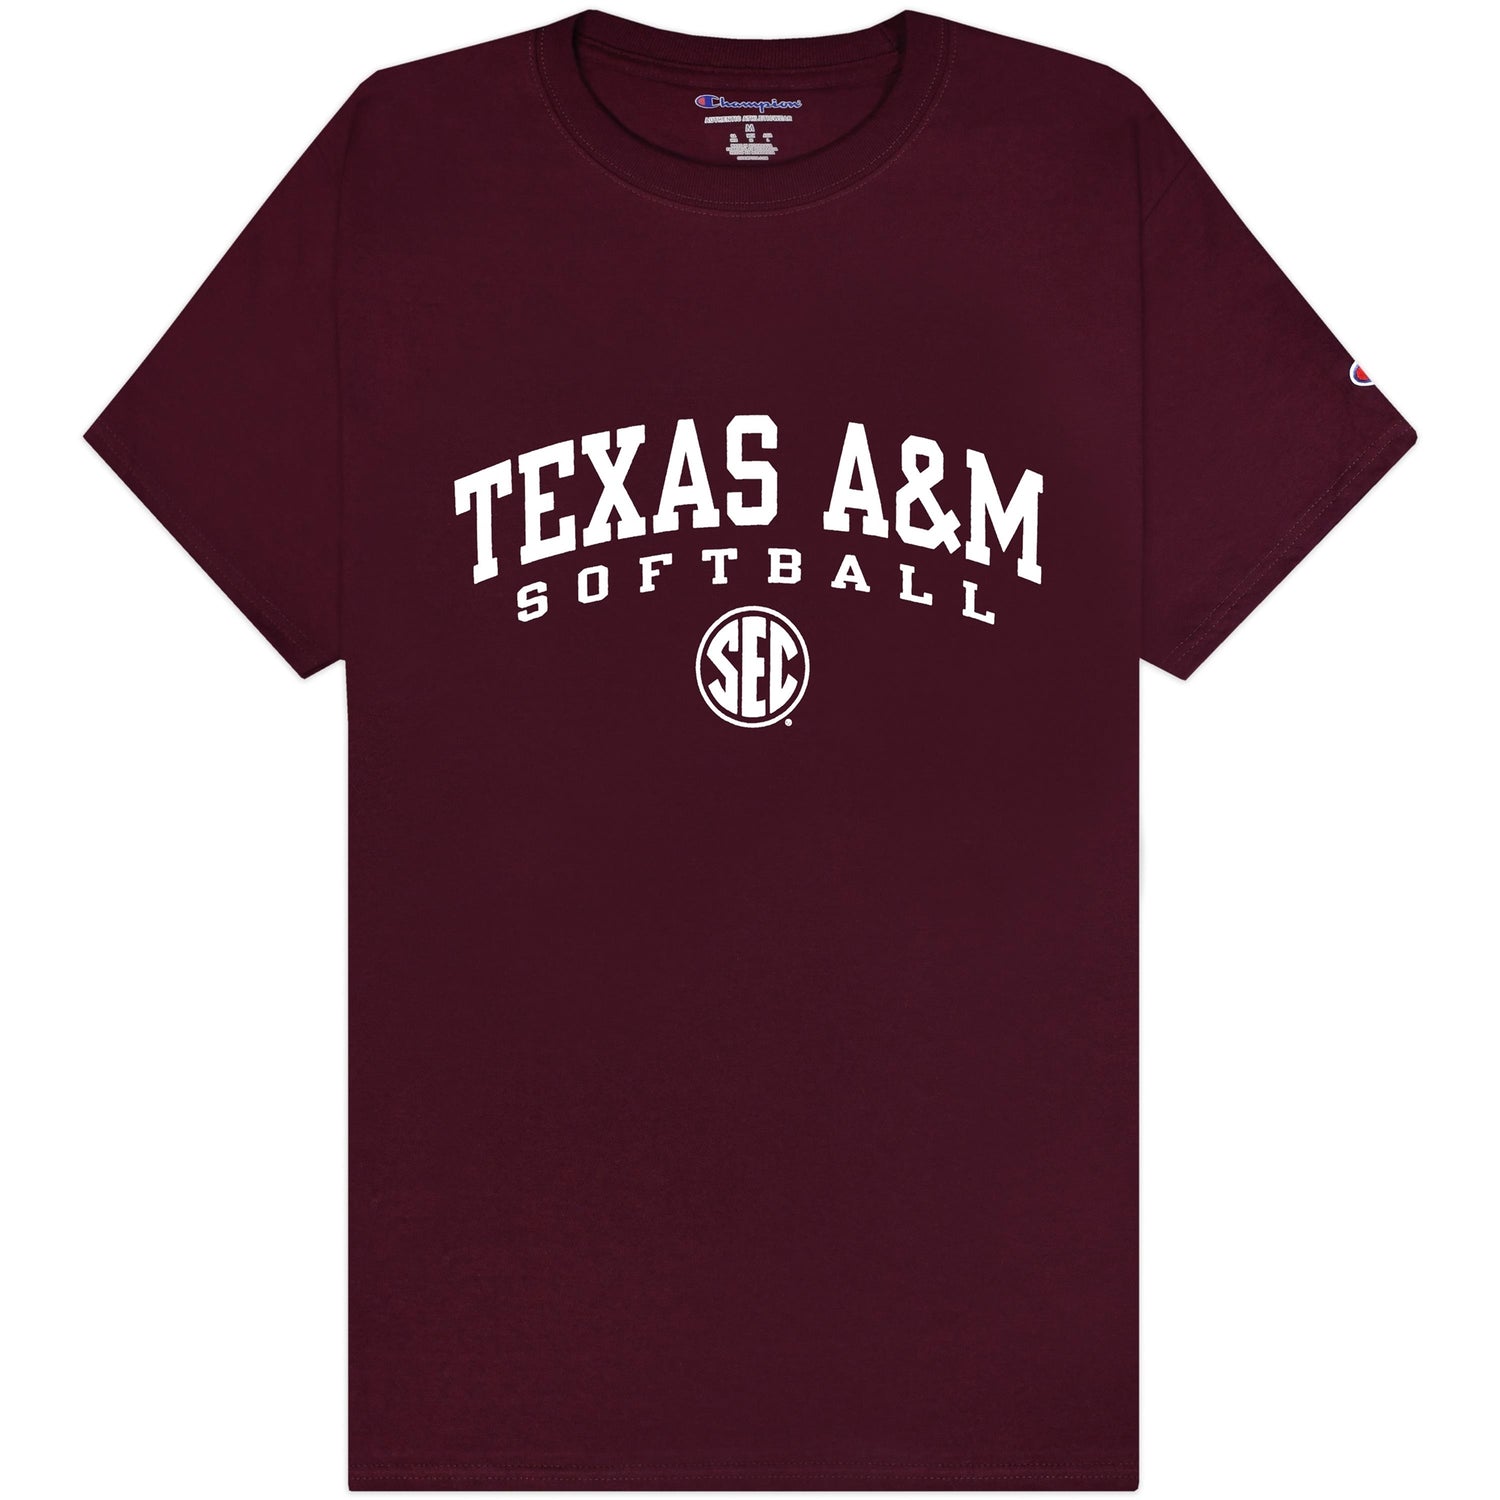 Texas A&M Champion Softball SEC T-Shirt